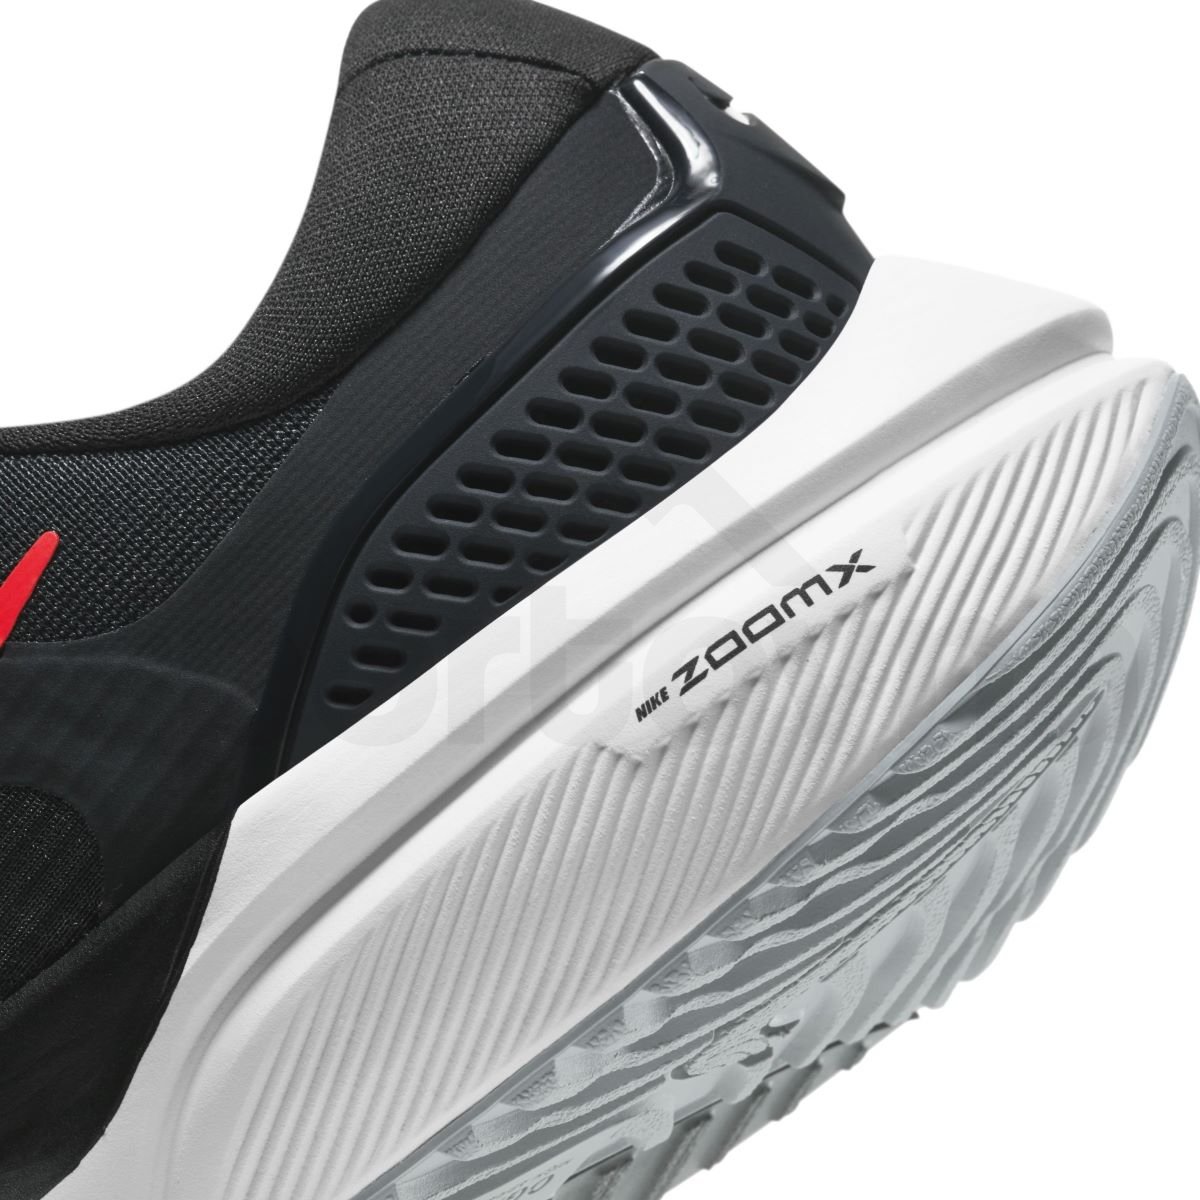 Obuv Nike Air Zoom Vomero 15 M - černá/červená